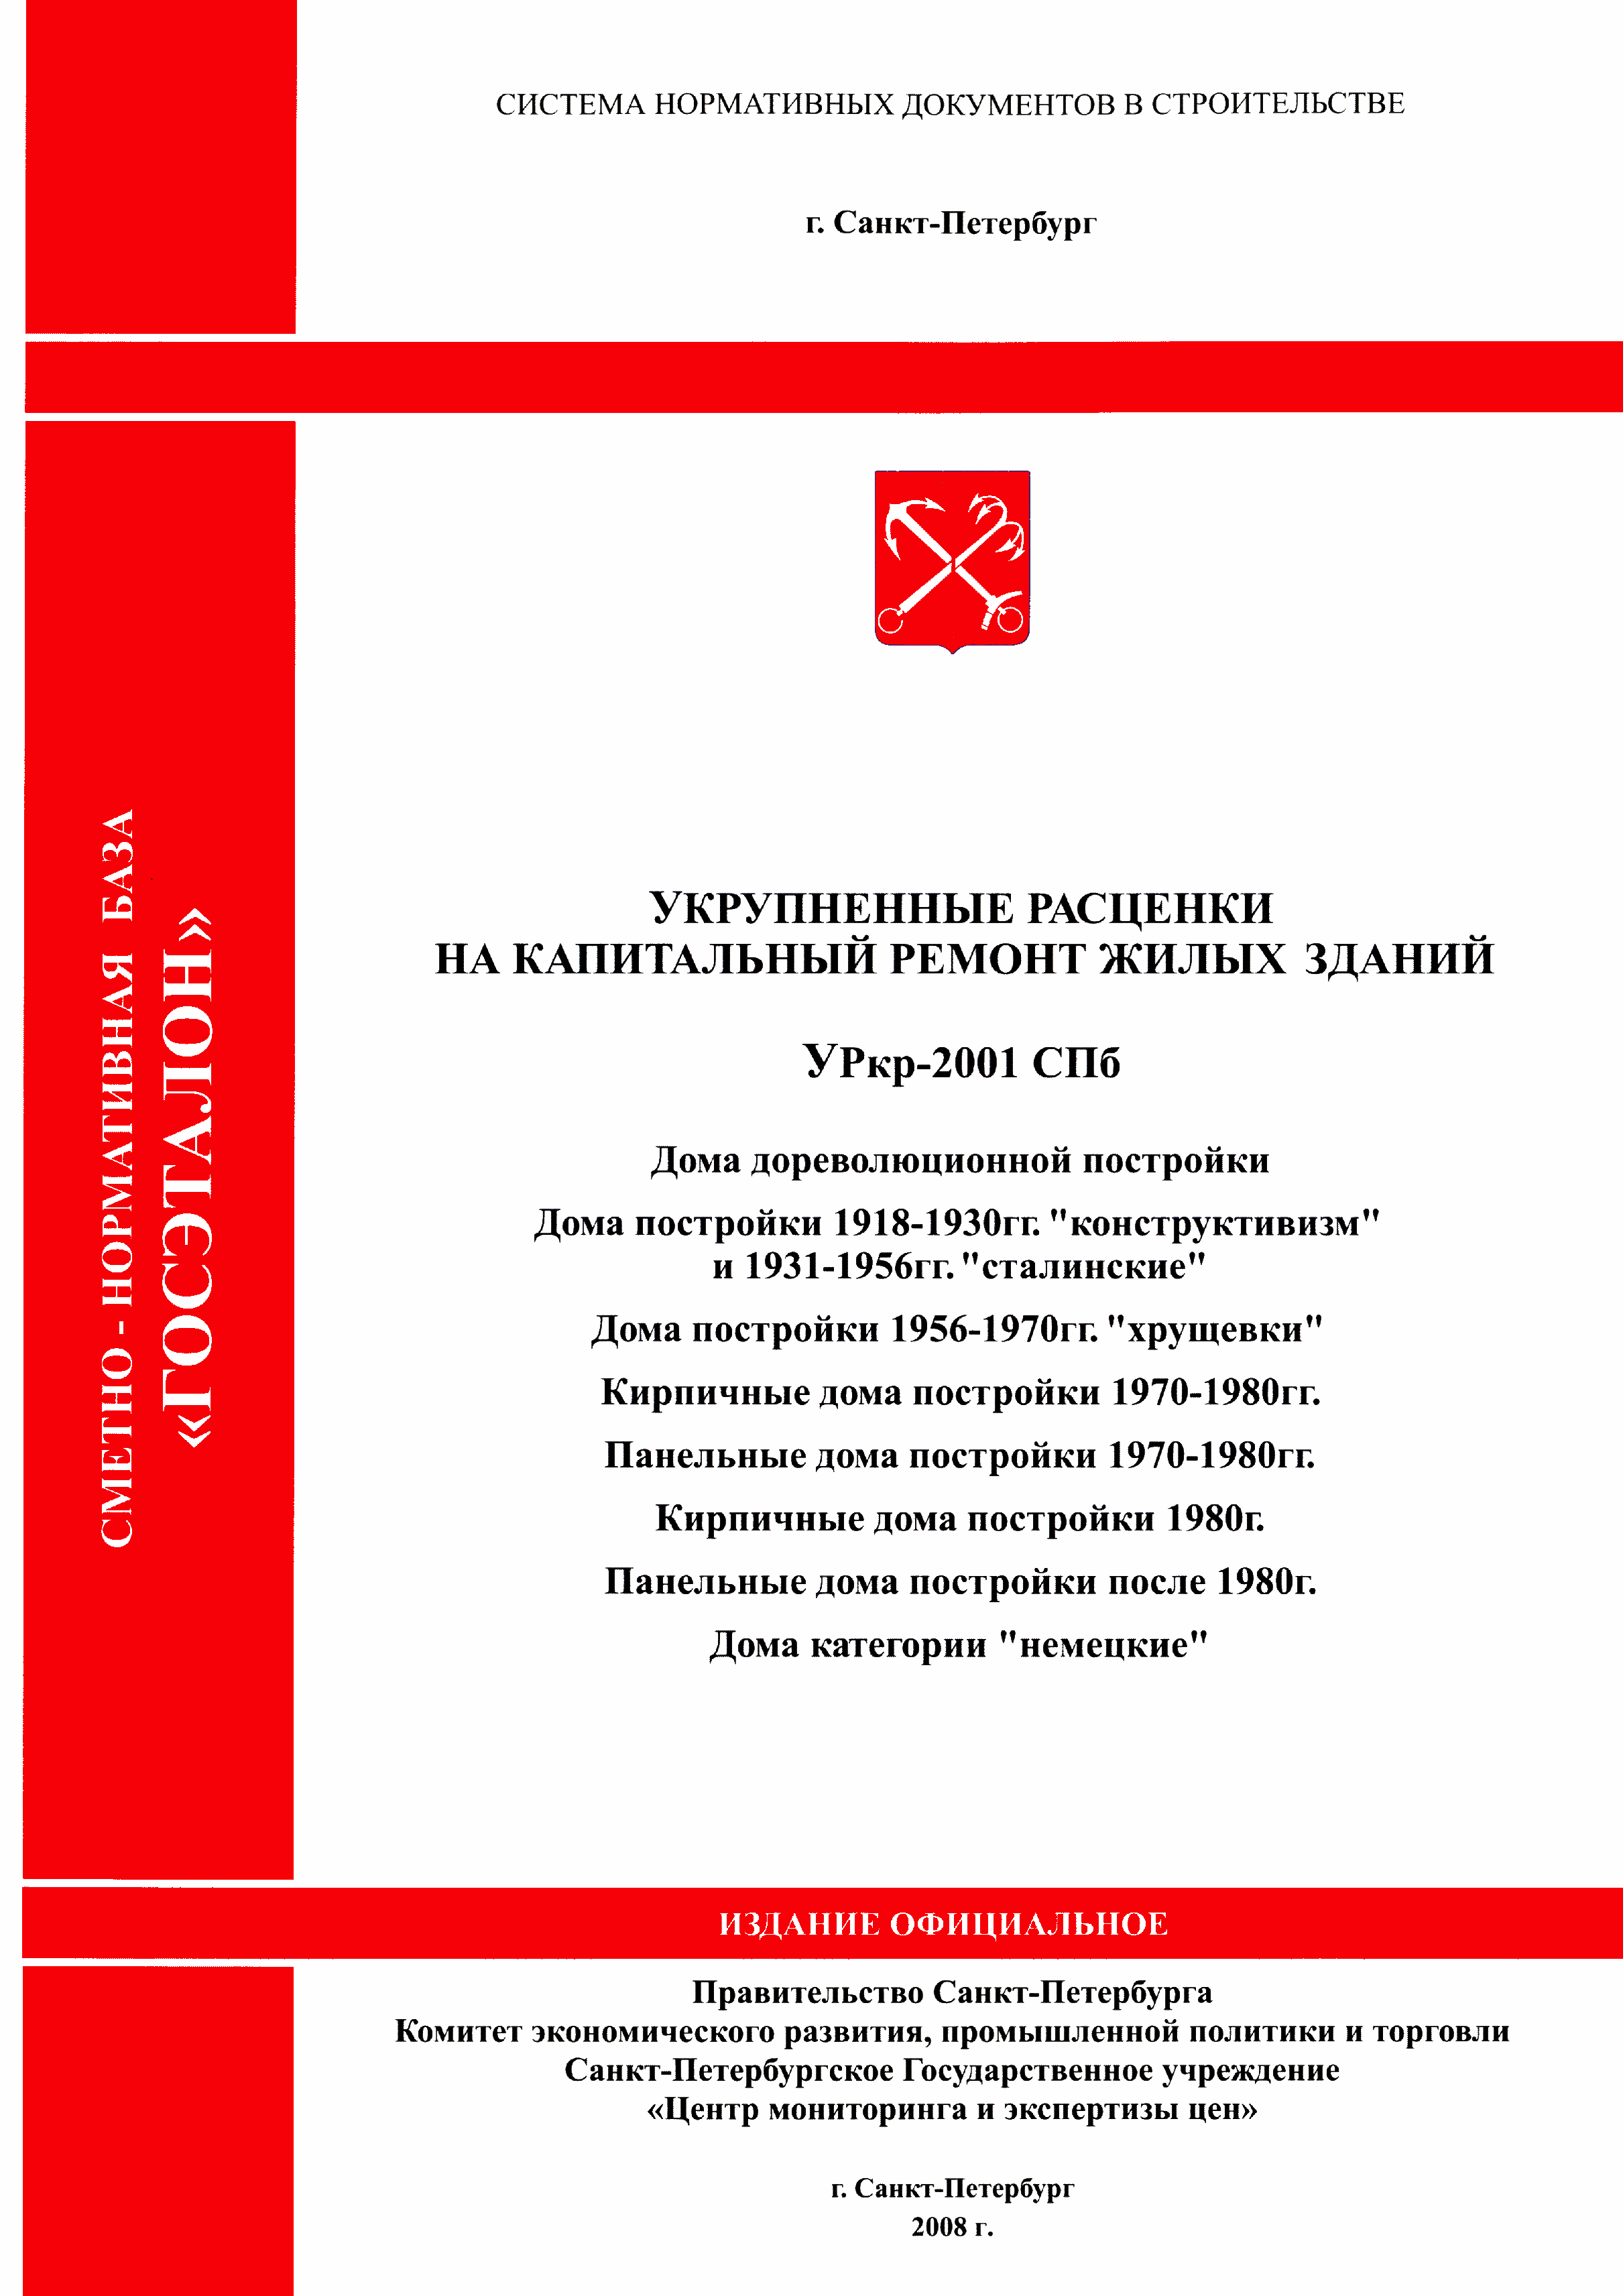 УРкр 06-2001 СПб